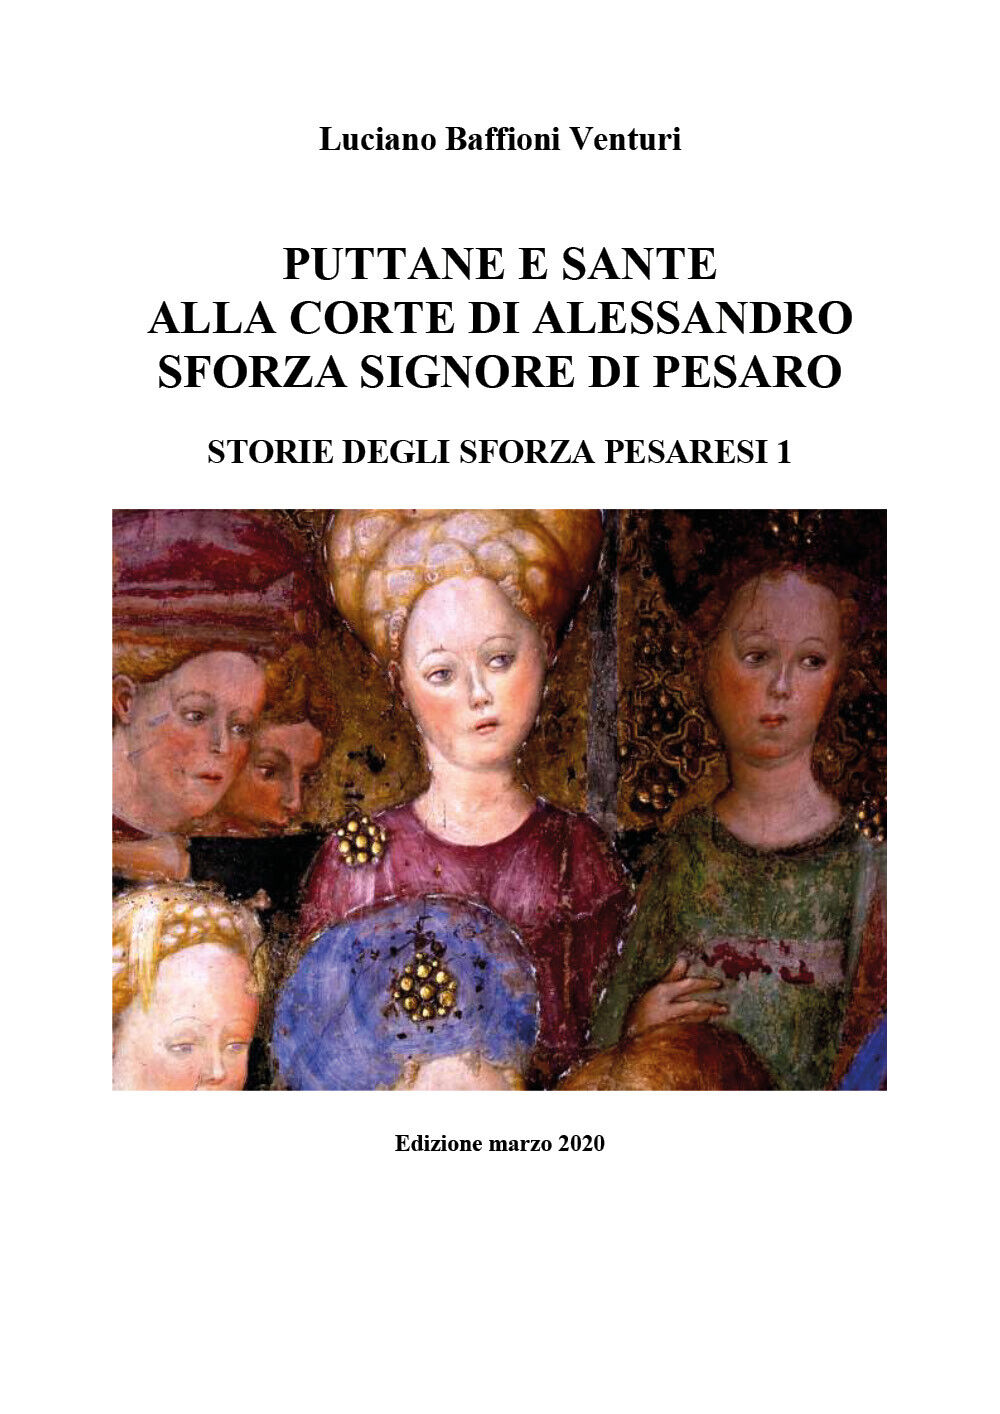 Puttane e sante alla corte di Alessandro Sforza signore di Pesaro. Storie degli  libro usato